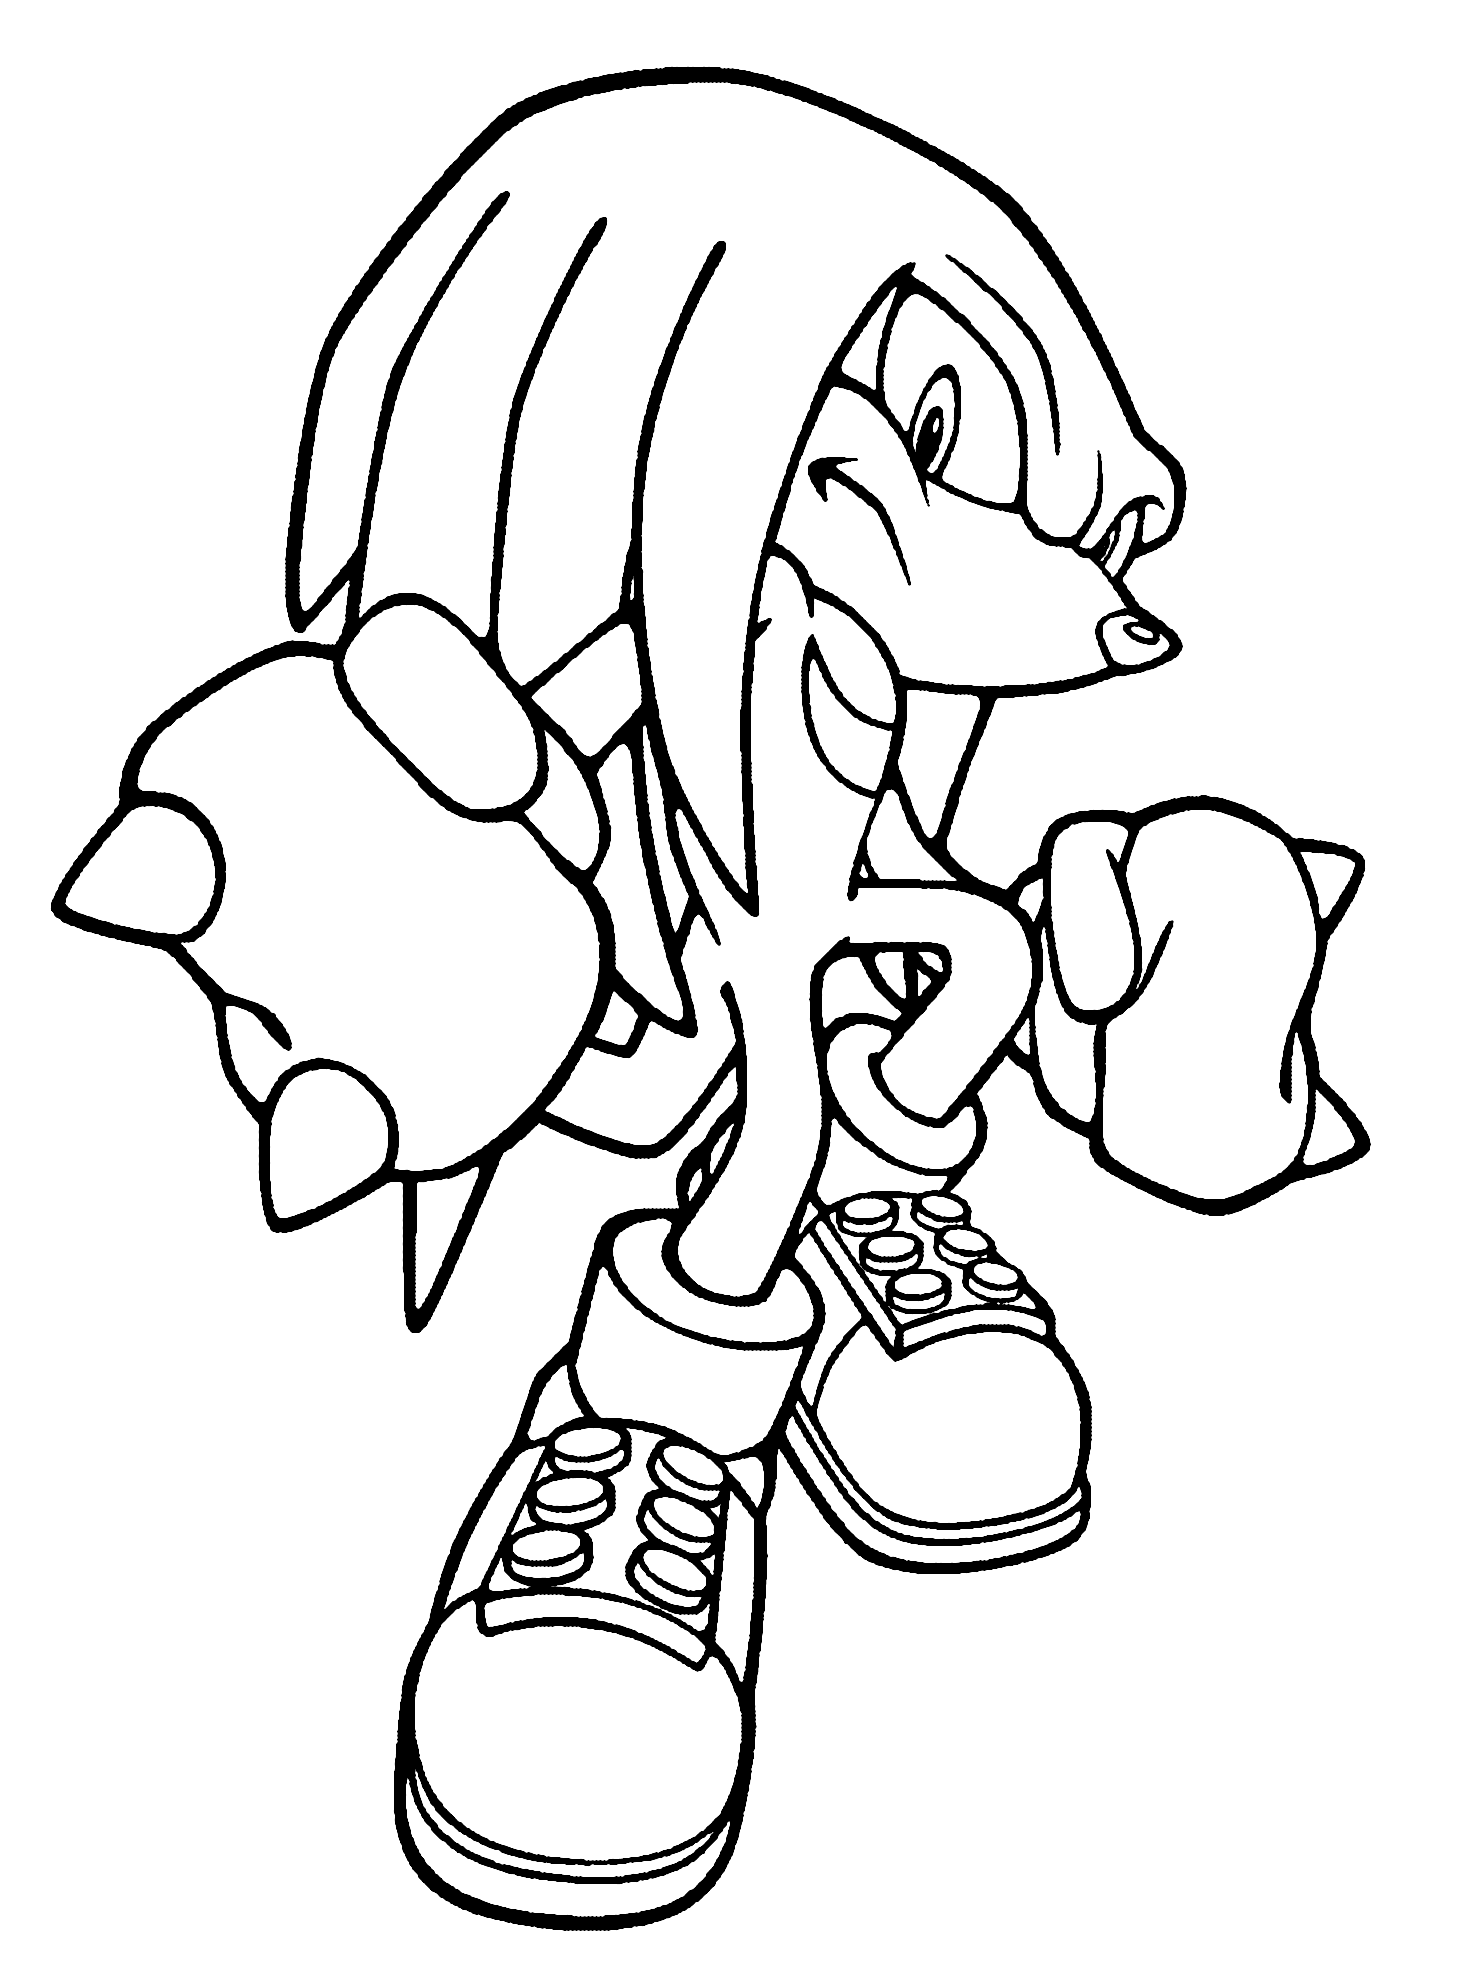 Disegno di Knuckles Sonic da colorare